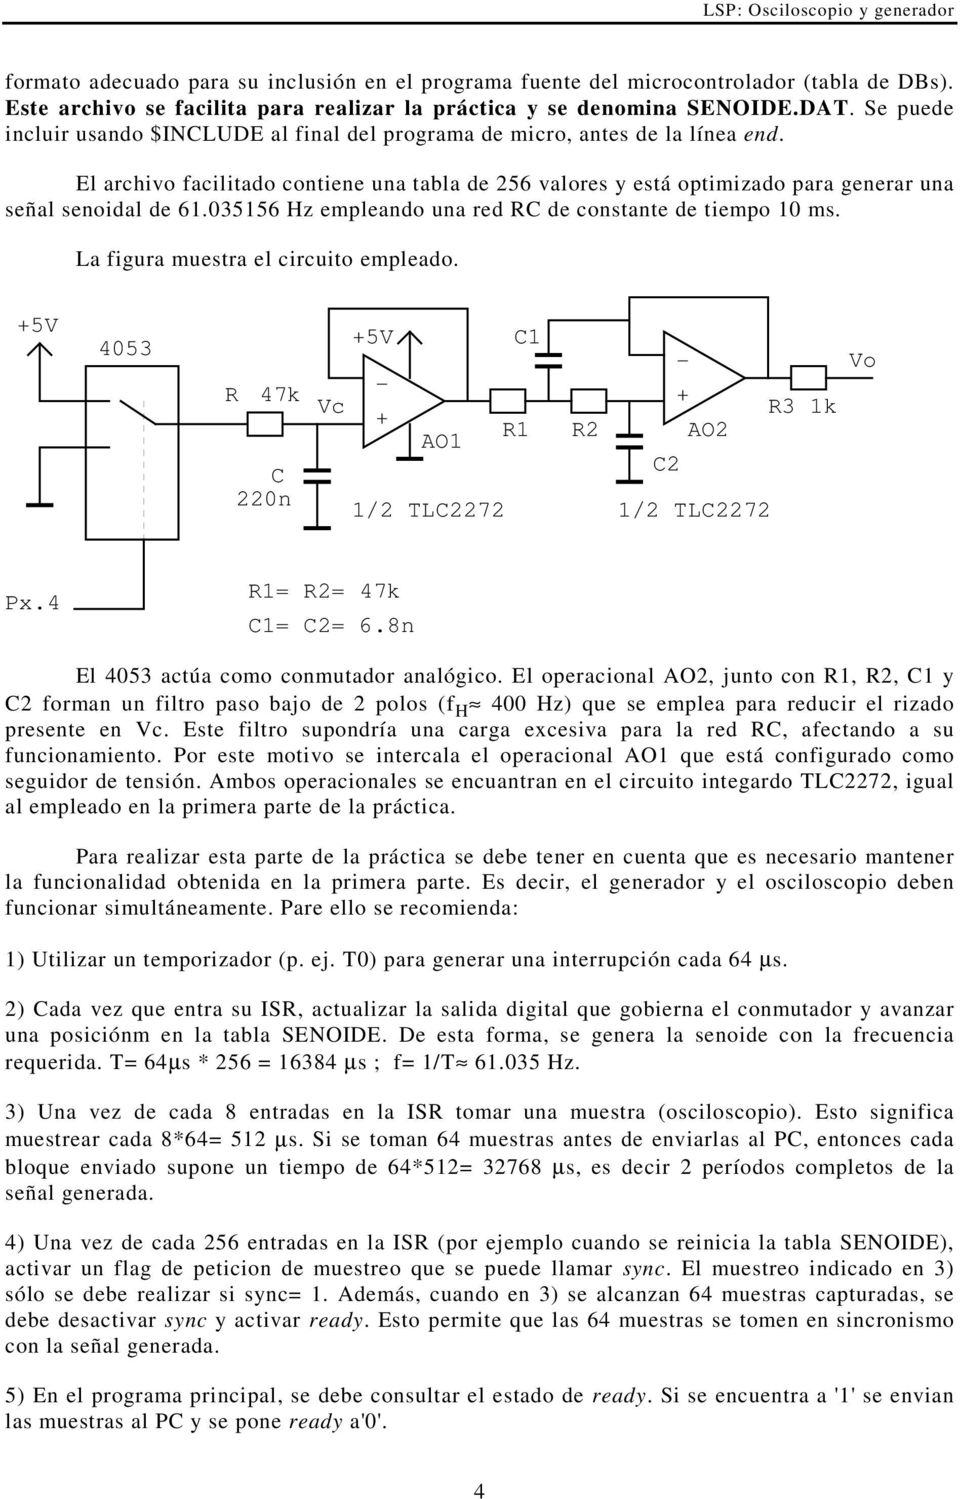 035156 Hz empleando una red RC de constante de tiempo 10 ms. La figura muestra el circuito empleado. 4053 R 47k C 220n Vc C1 AO1 R1 R2 R3 1k AO2 C2 1/2 TLC2272 1/2 TLC2272 Vo Px.